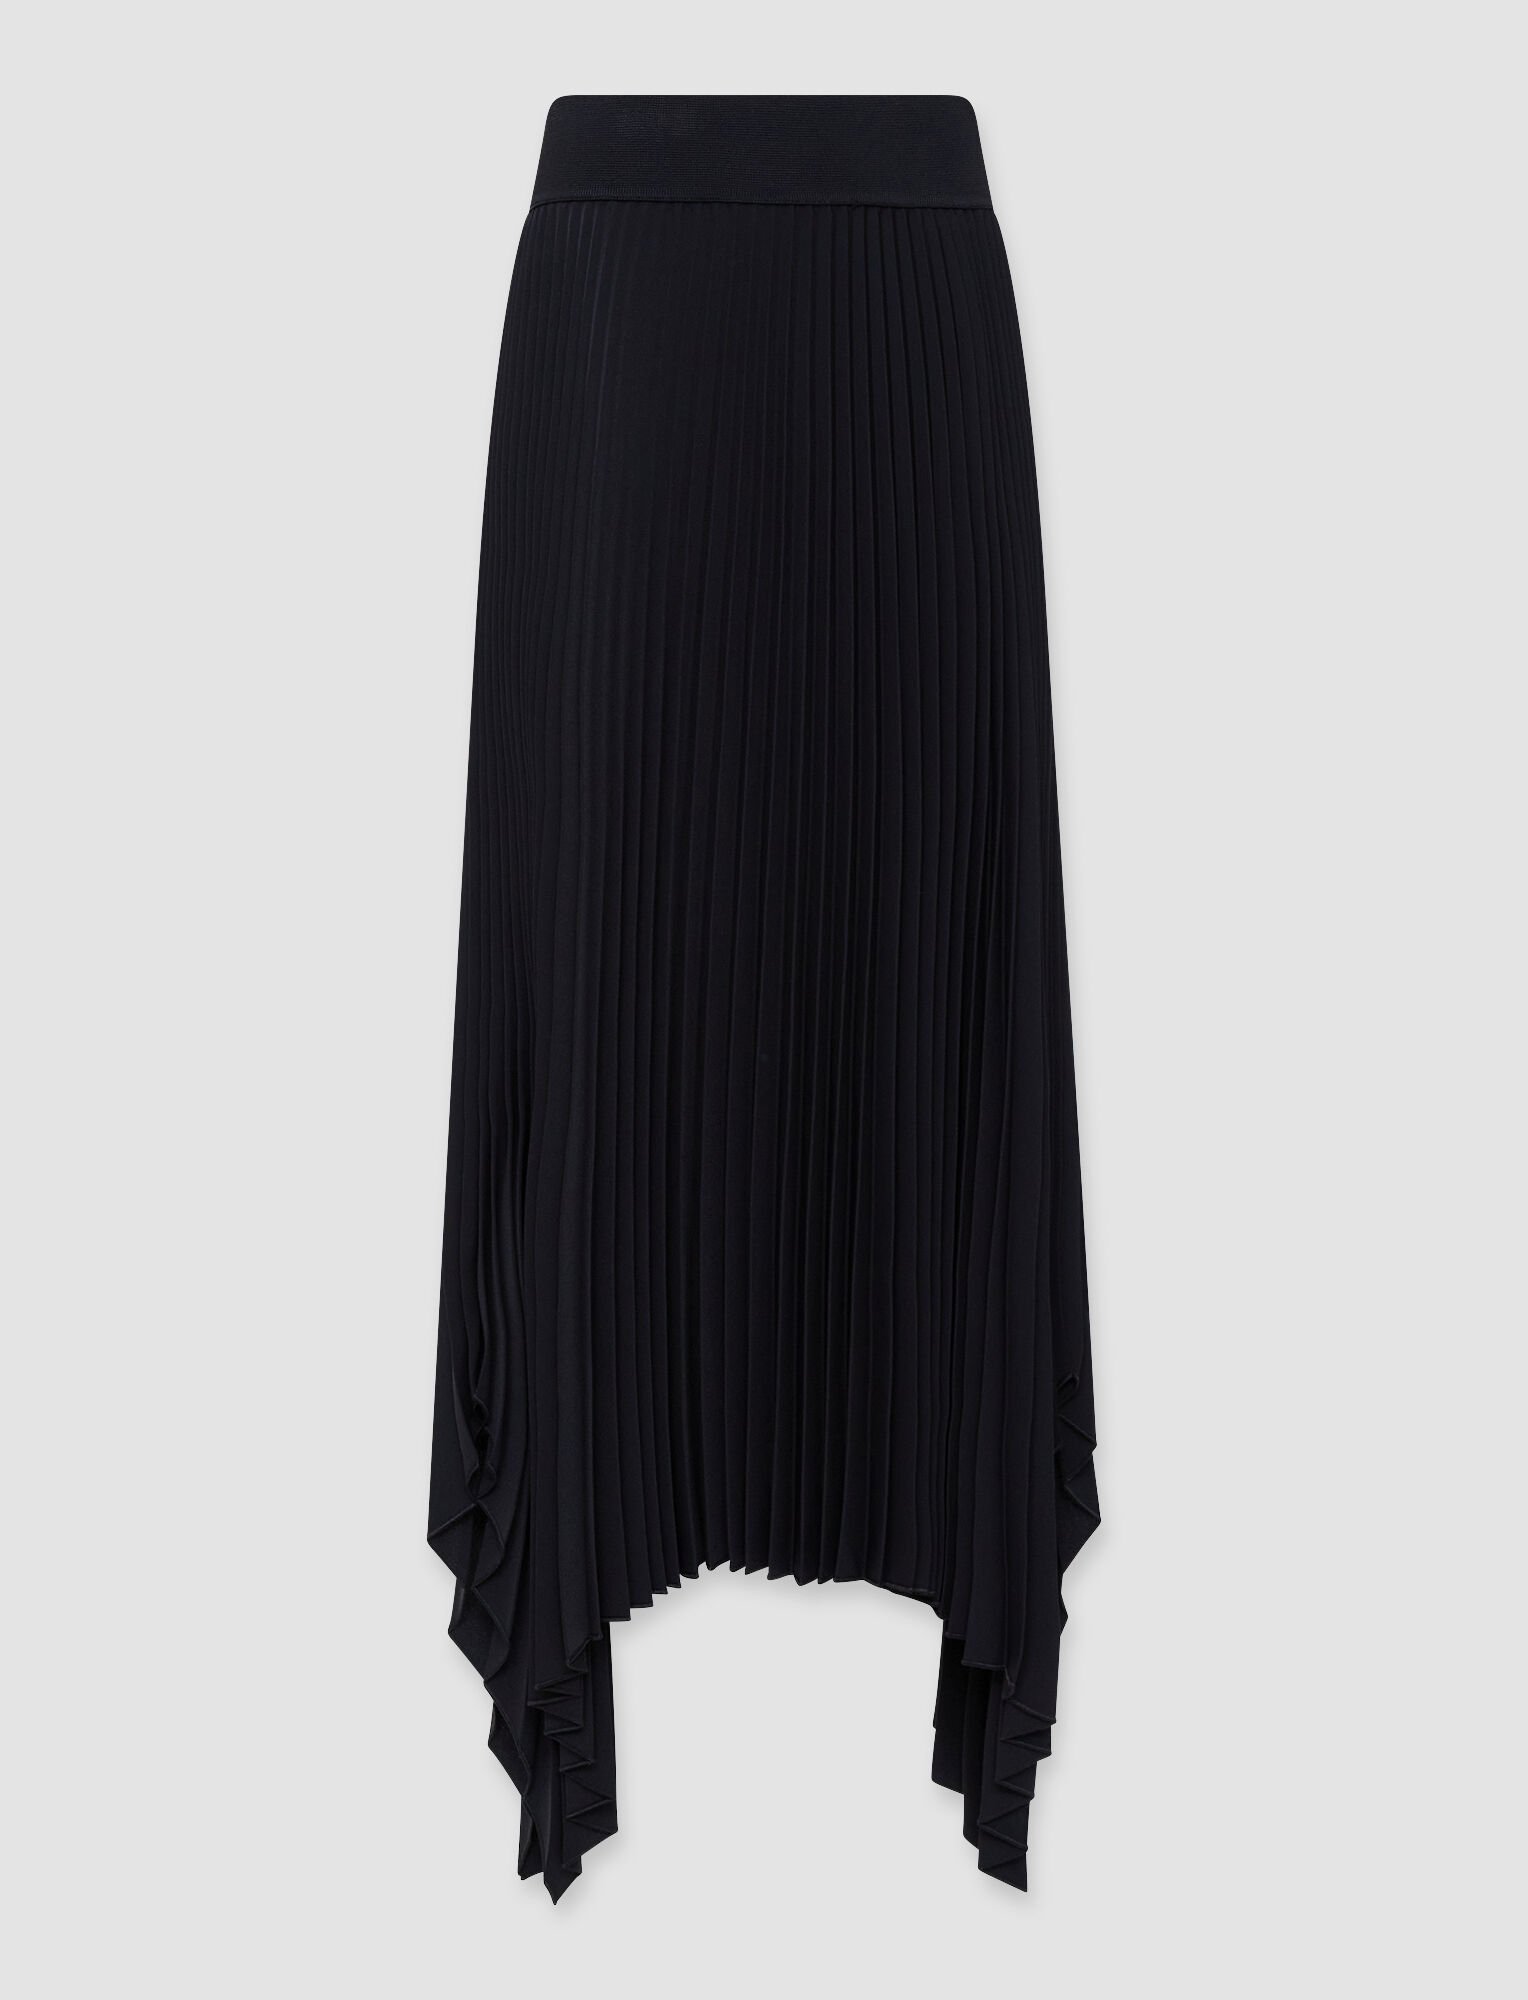 Joseph, Pleated Crepe Ade Skirt, in Black